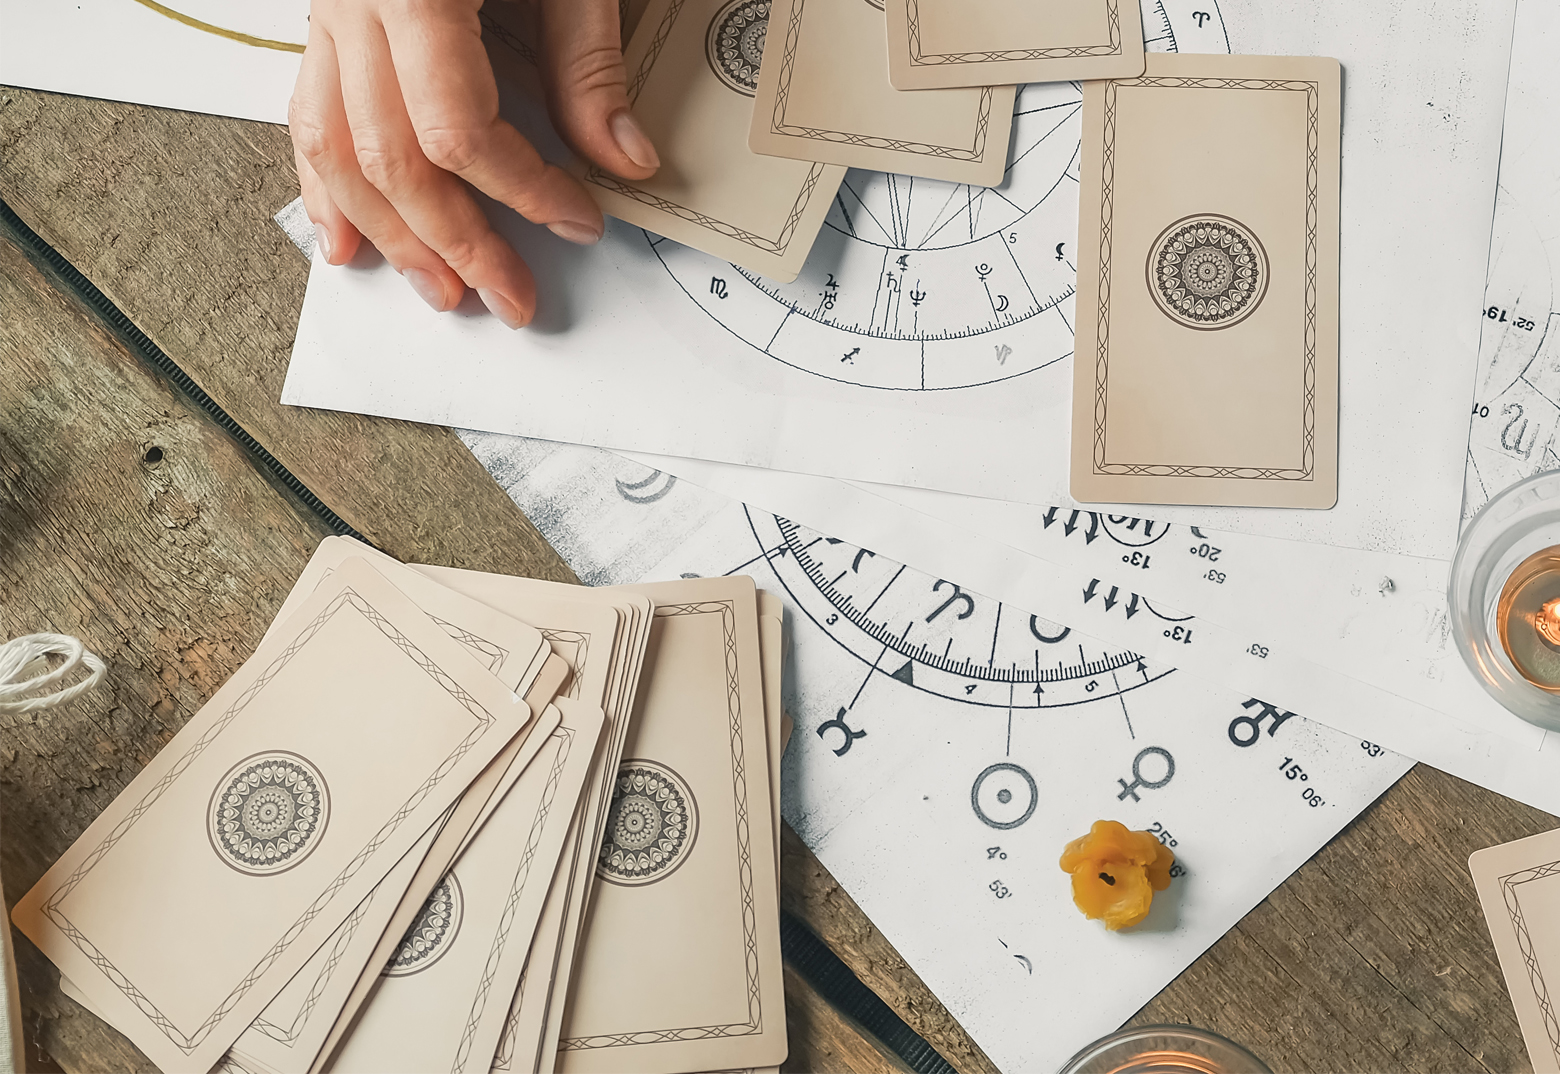 Tarot Karten und Symbole liegen auf dem Tisch. Die Hand einer Frau ist zu sehen.